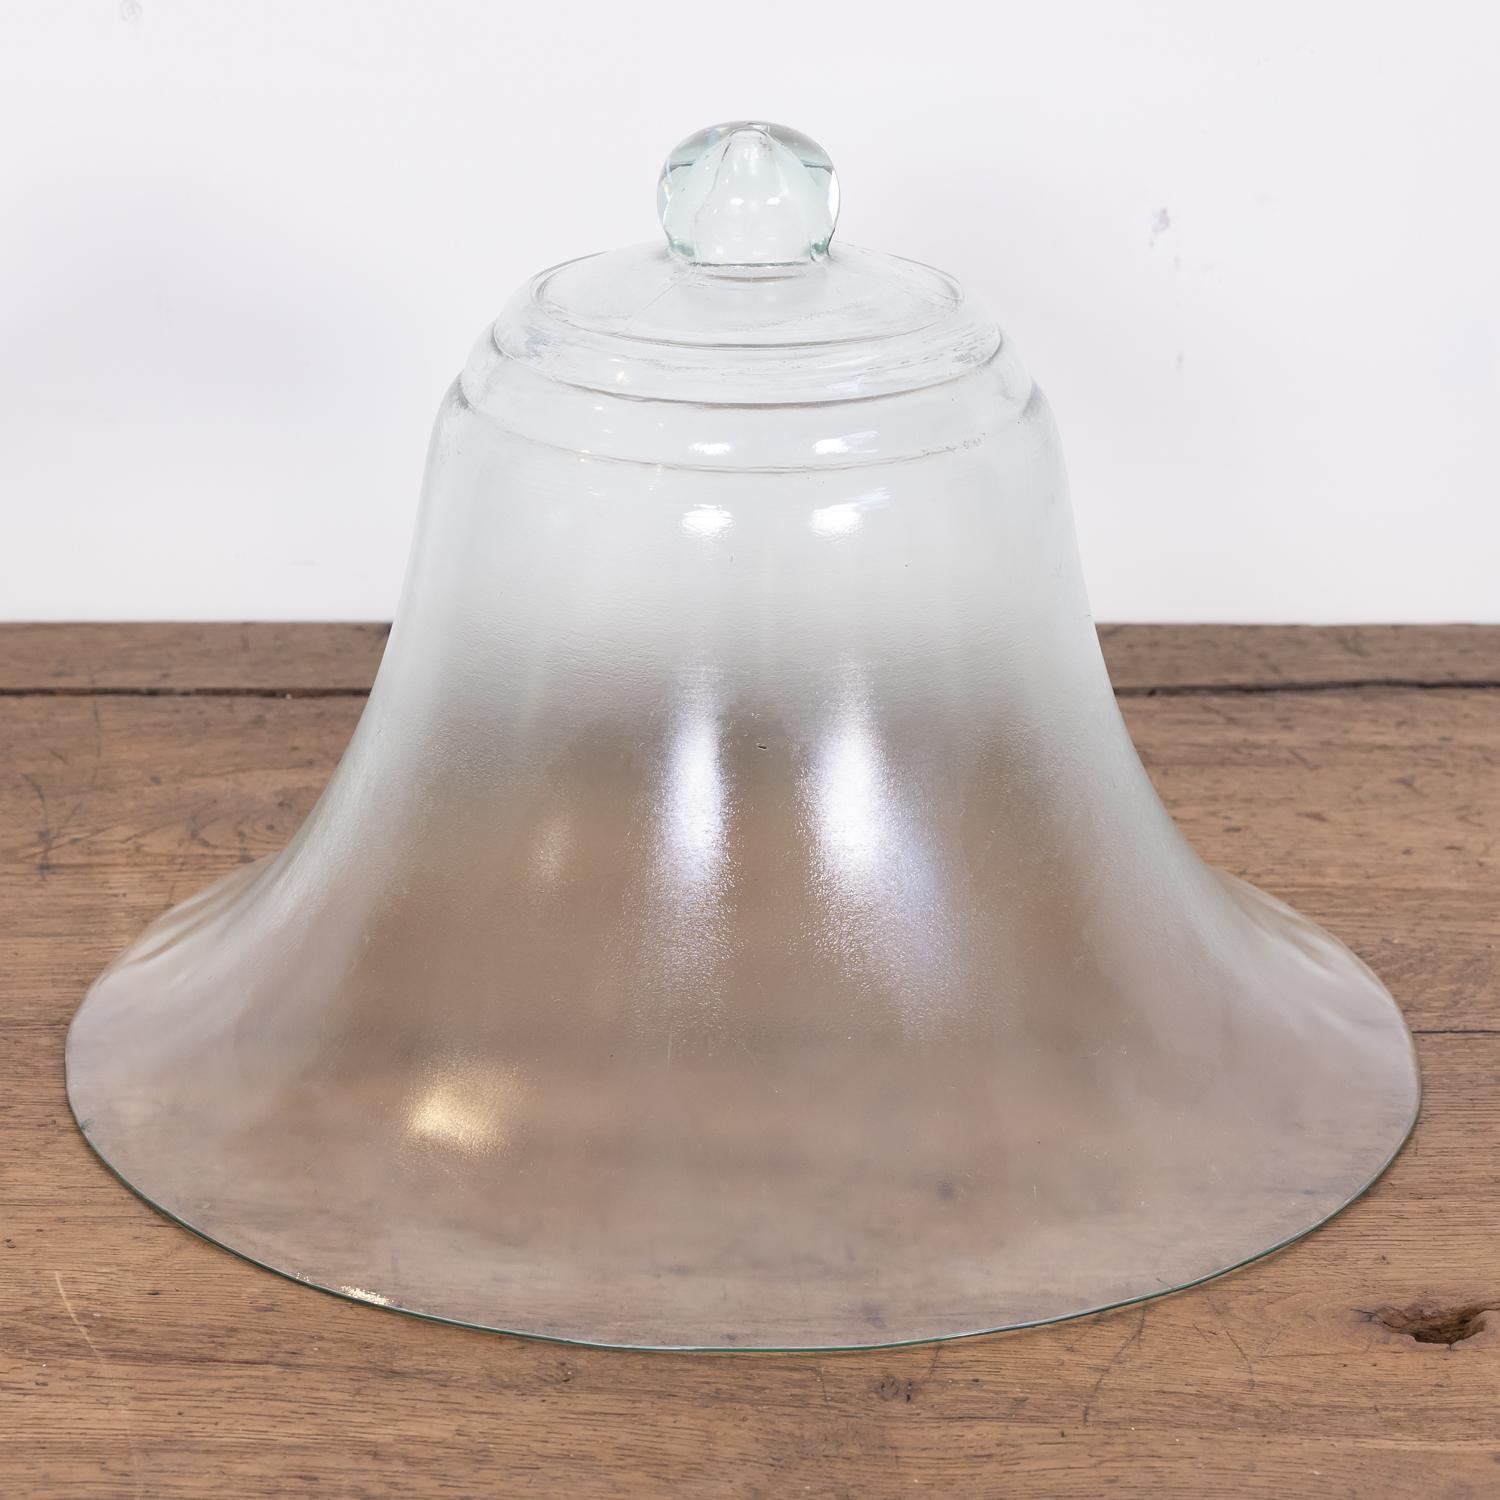 Grande cloche de jardin française du 19ème siècle, en forme de cloche, formée d'une seule pièce de verre transparent avec une poignée solide en forme de bouton, vers les années 1880. Soufflé à la main dans un verre épais, il a été conçu pour servir